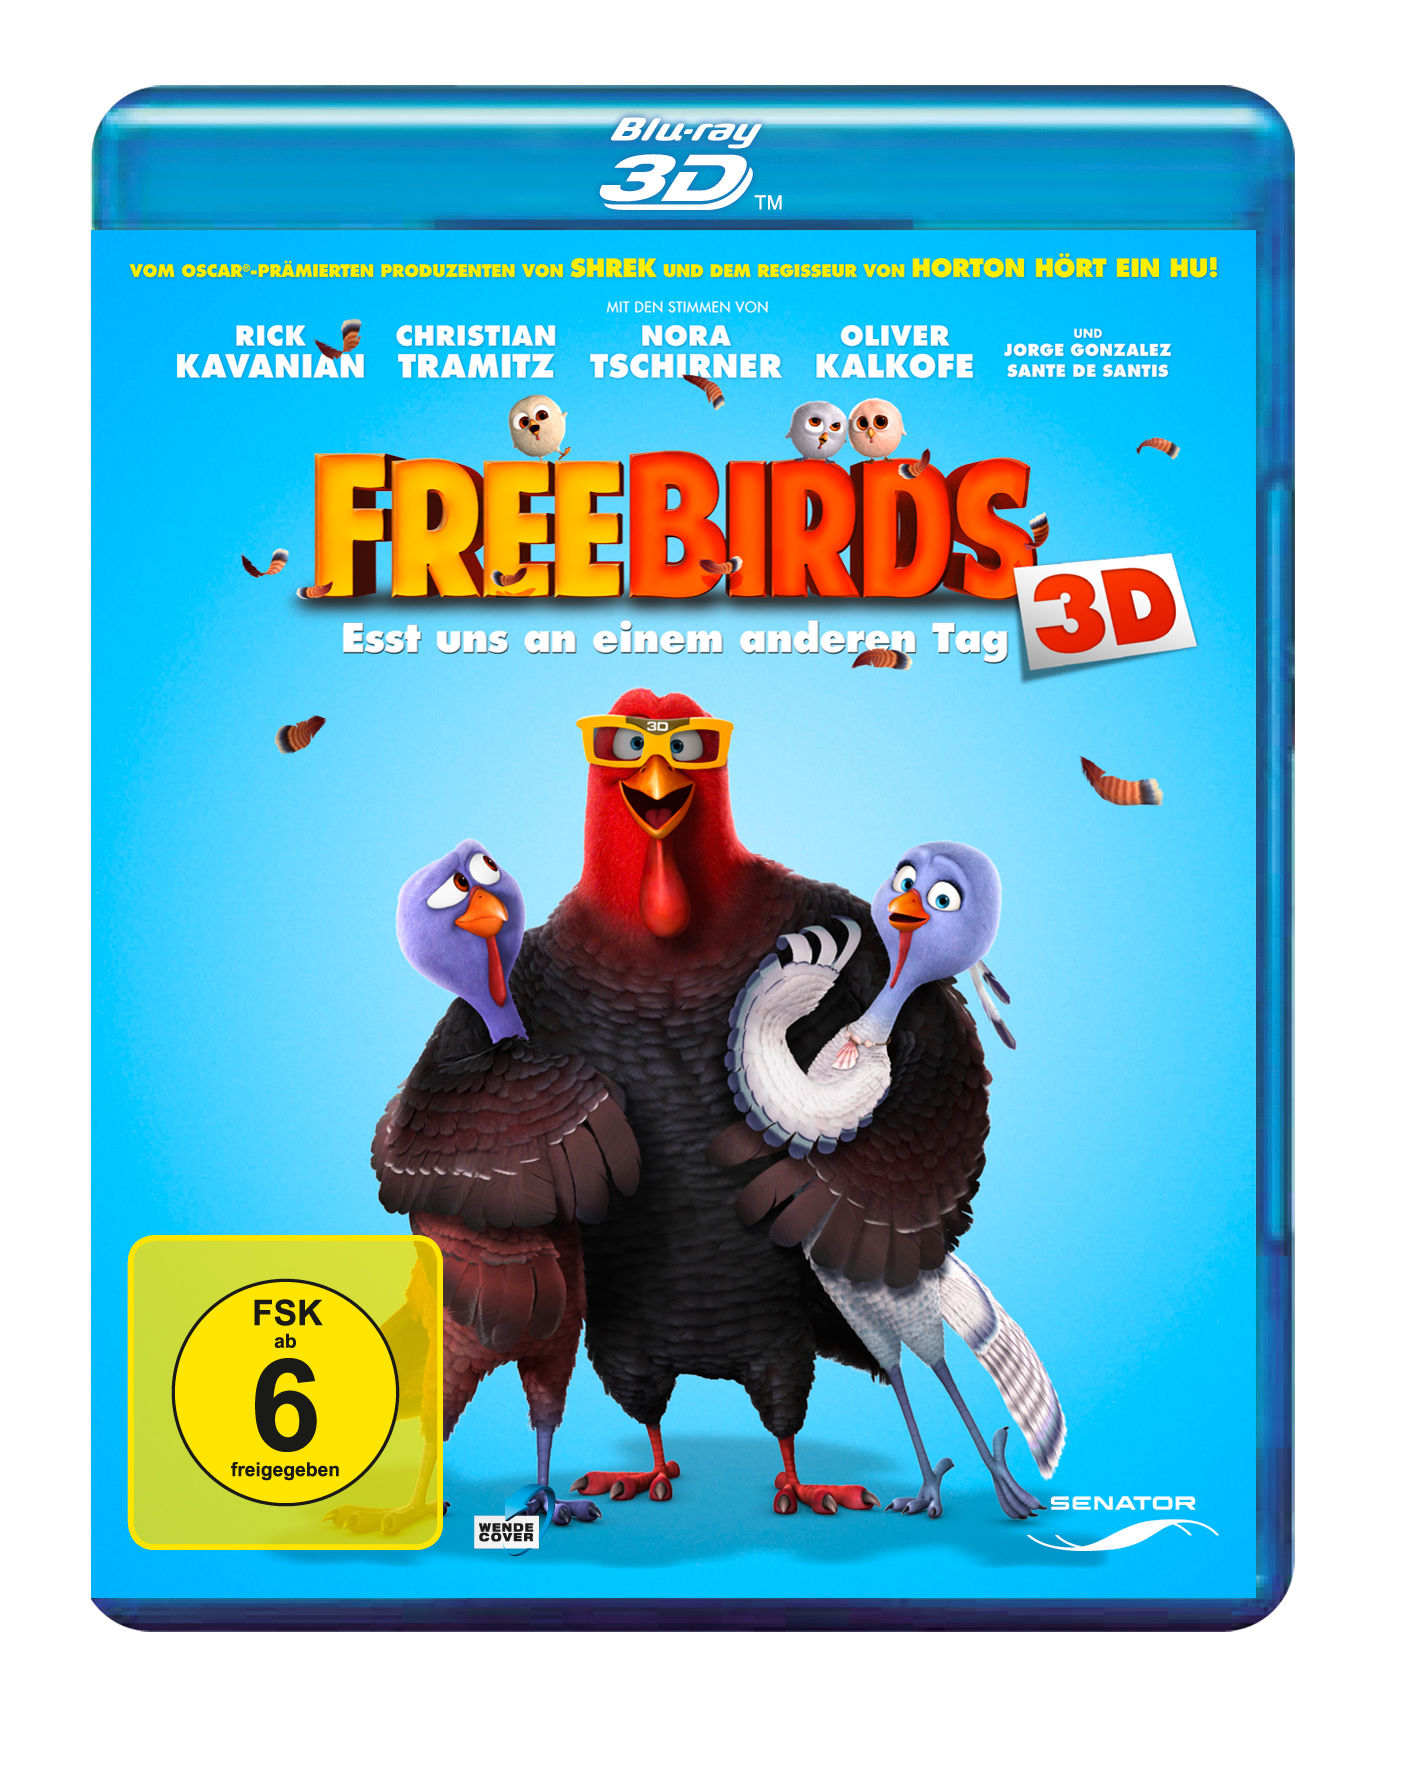 Blu-ray Tag an Free einem 3D - Birds anderen Esst uns